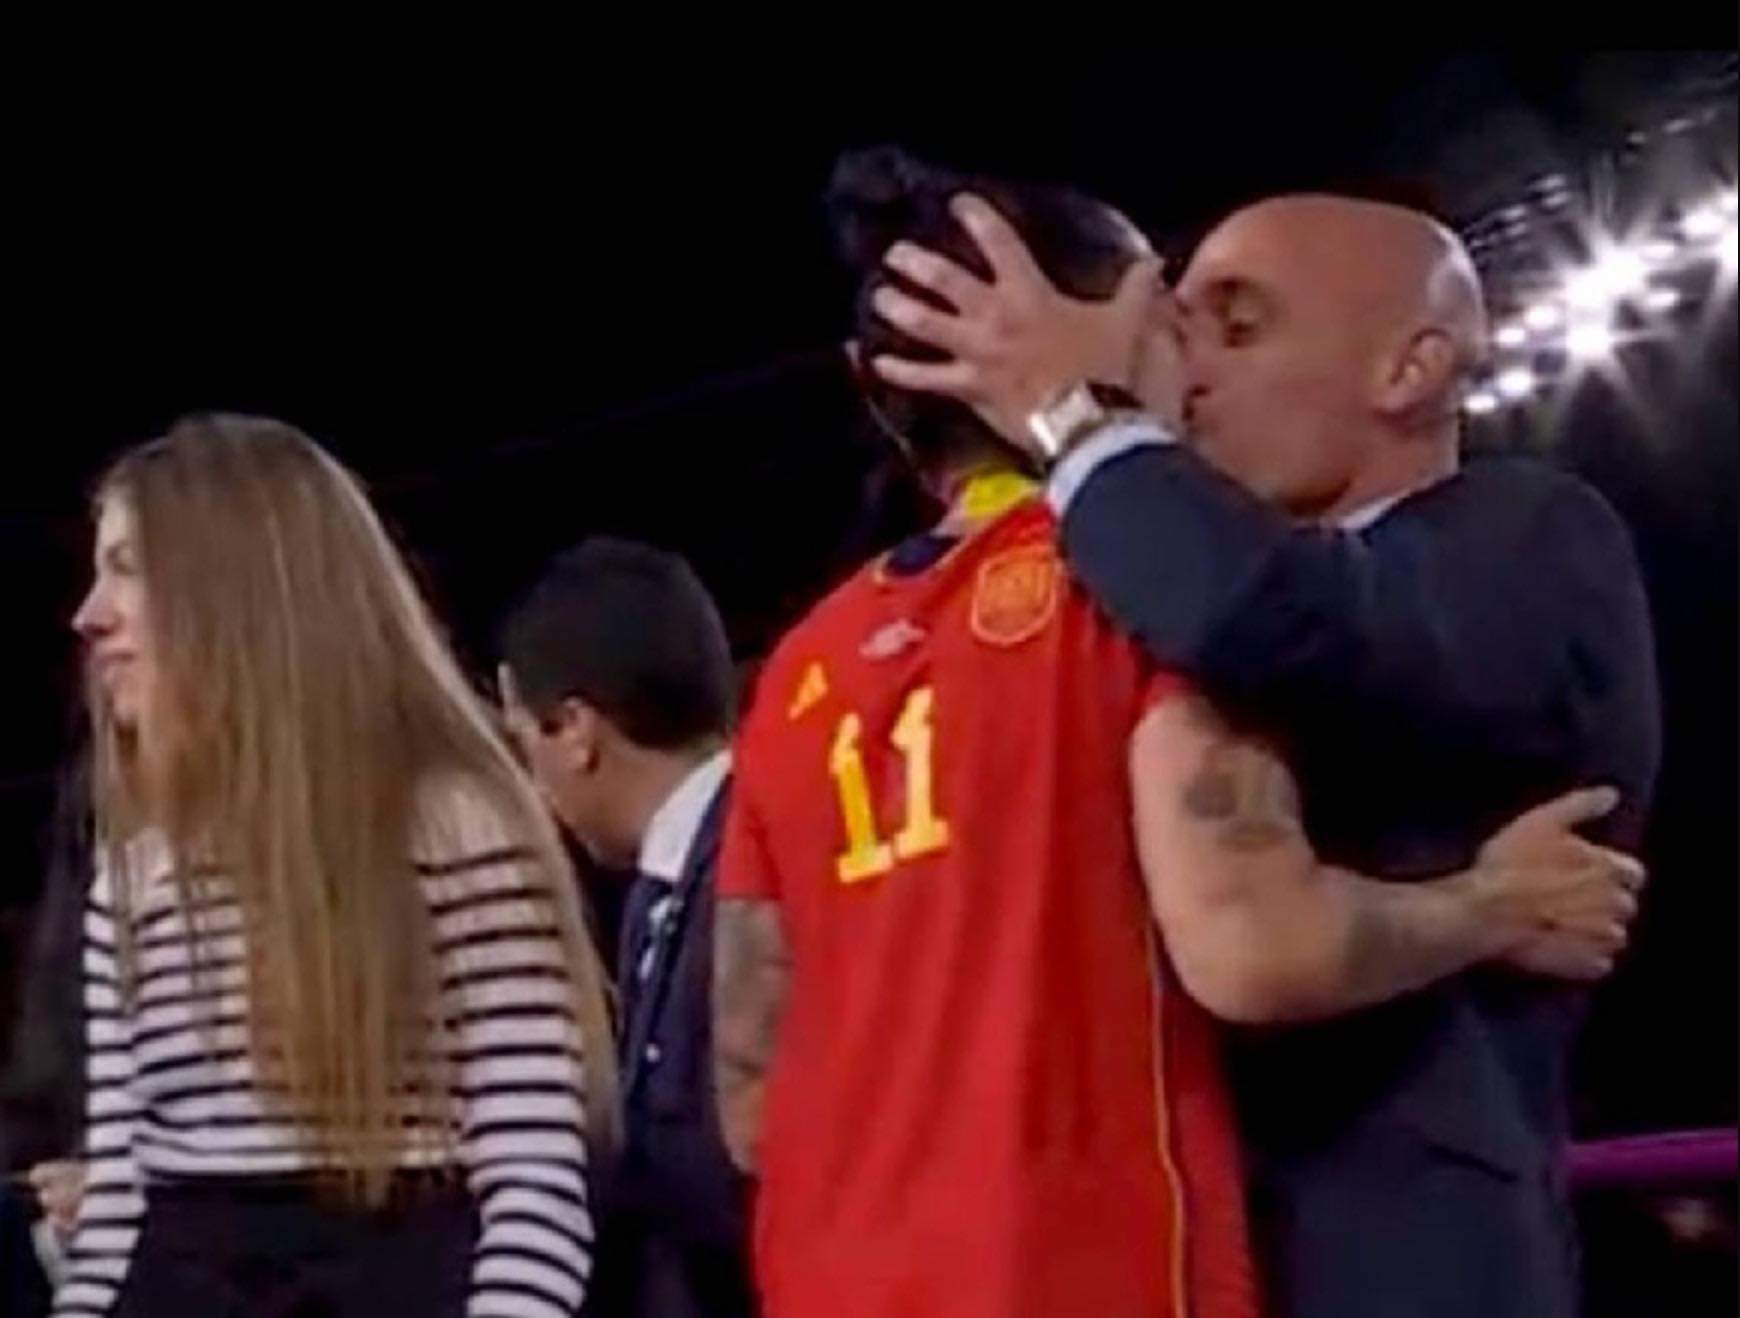 Nụ hôn làm khủng hoảng nghiêm trọng bóng đá Tây Ban Nha - Ảnh 1.